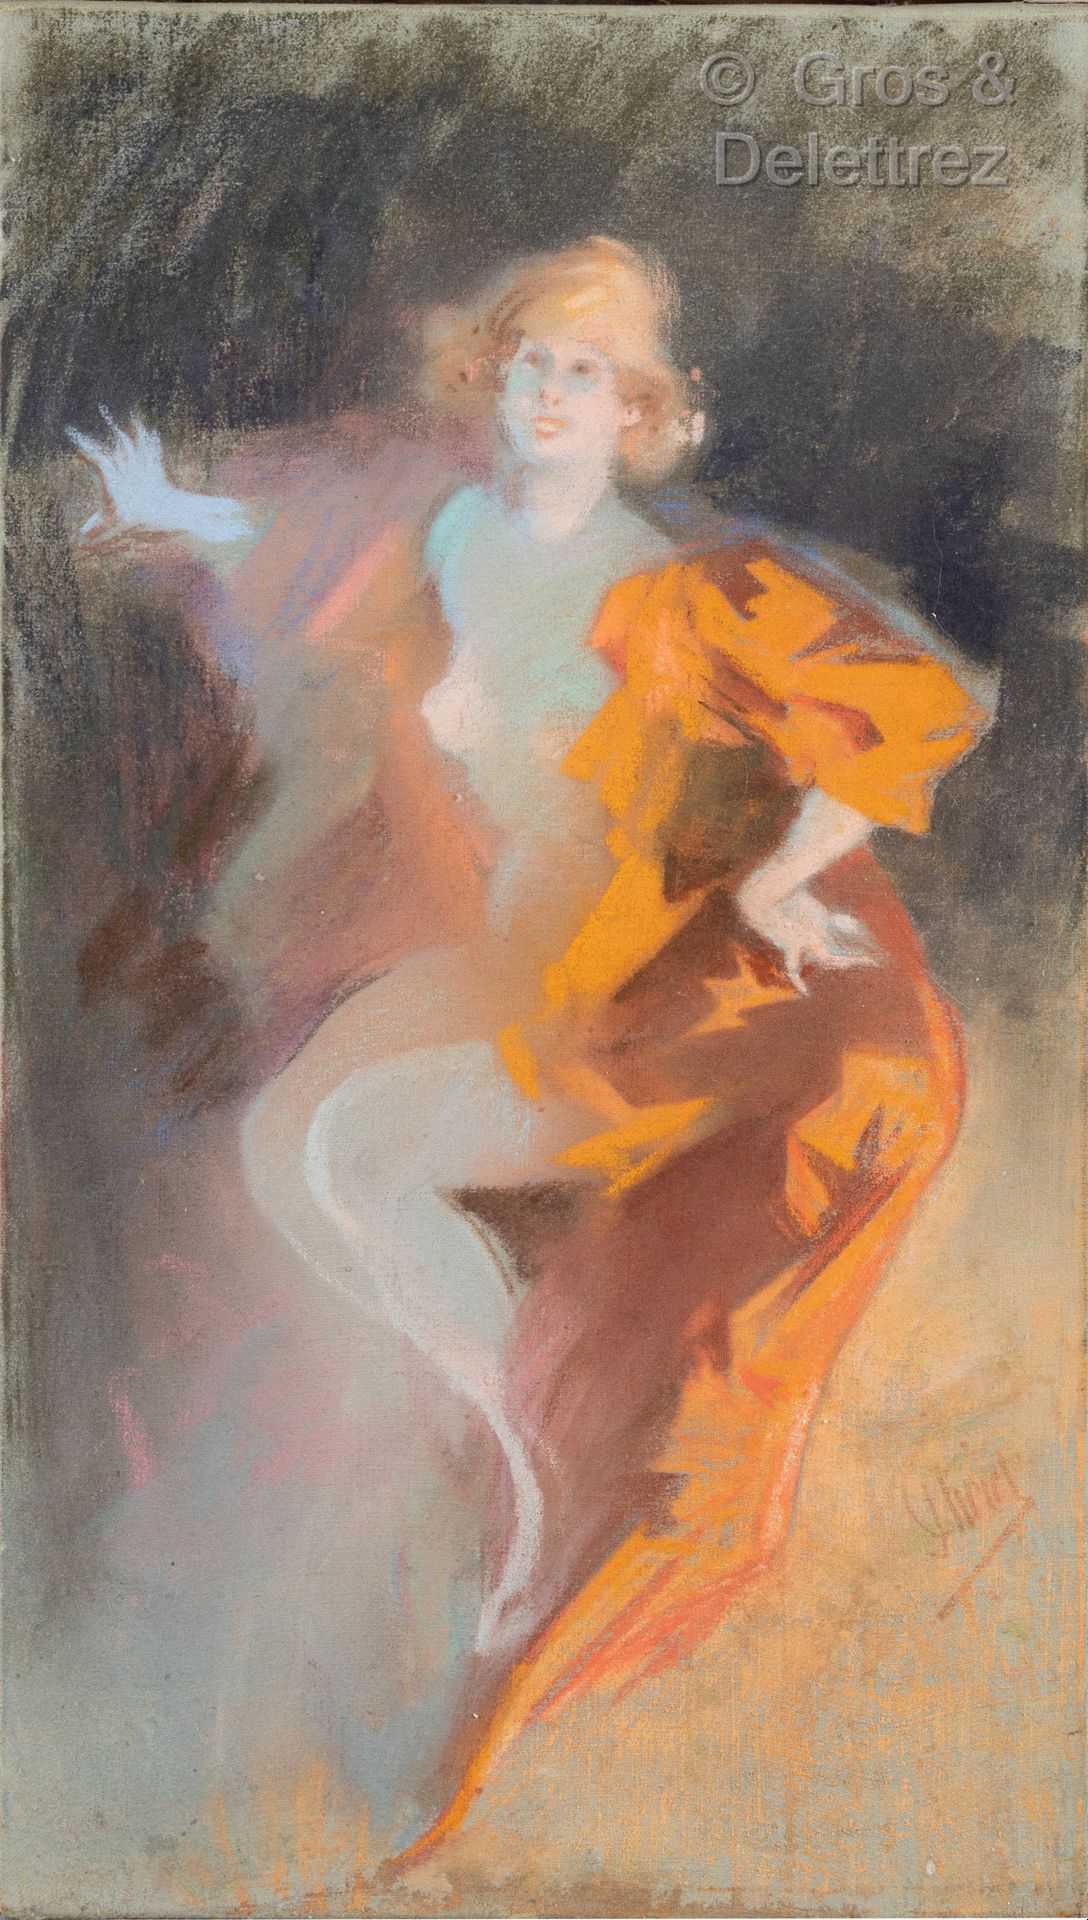 Jules CHÉRET (1836-1932) 年轻的女人与橙色的窗帘

画布上的粉笔画。

44 x 25厘米